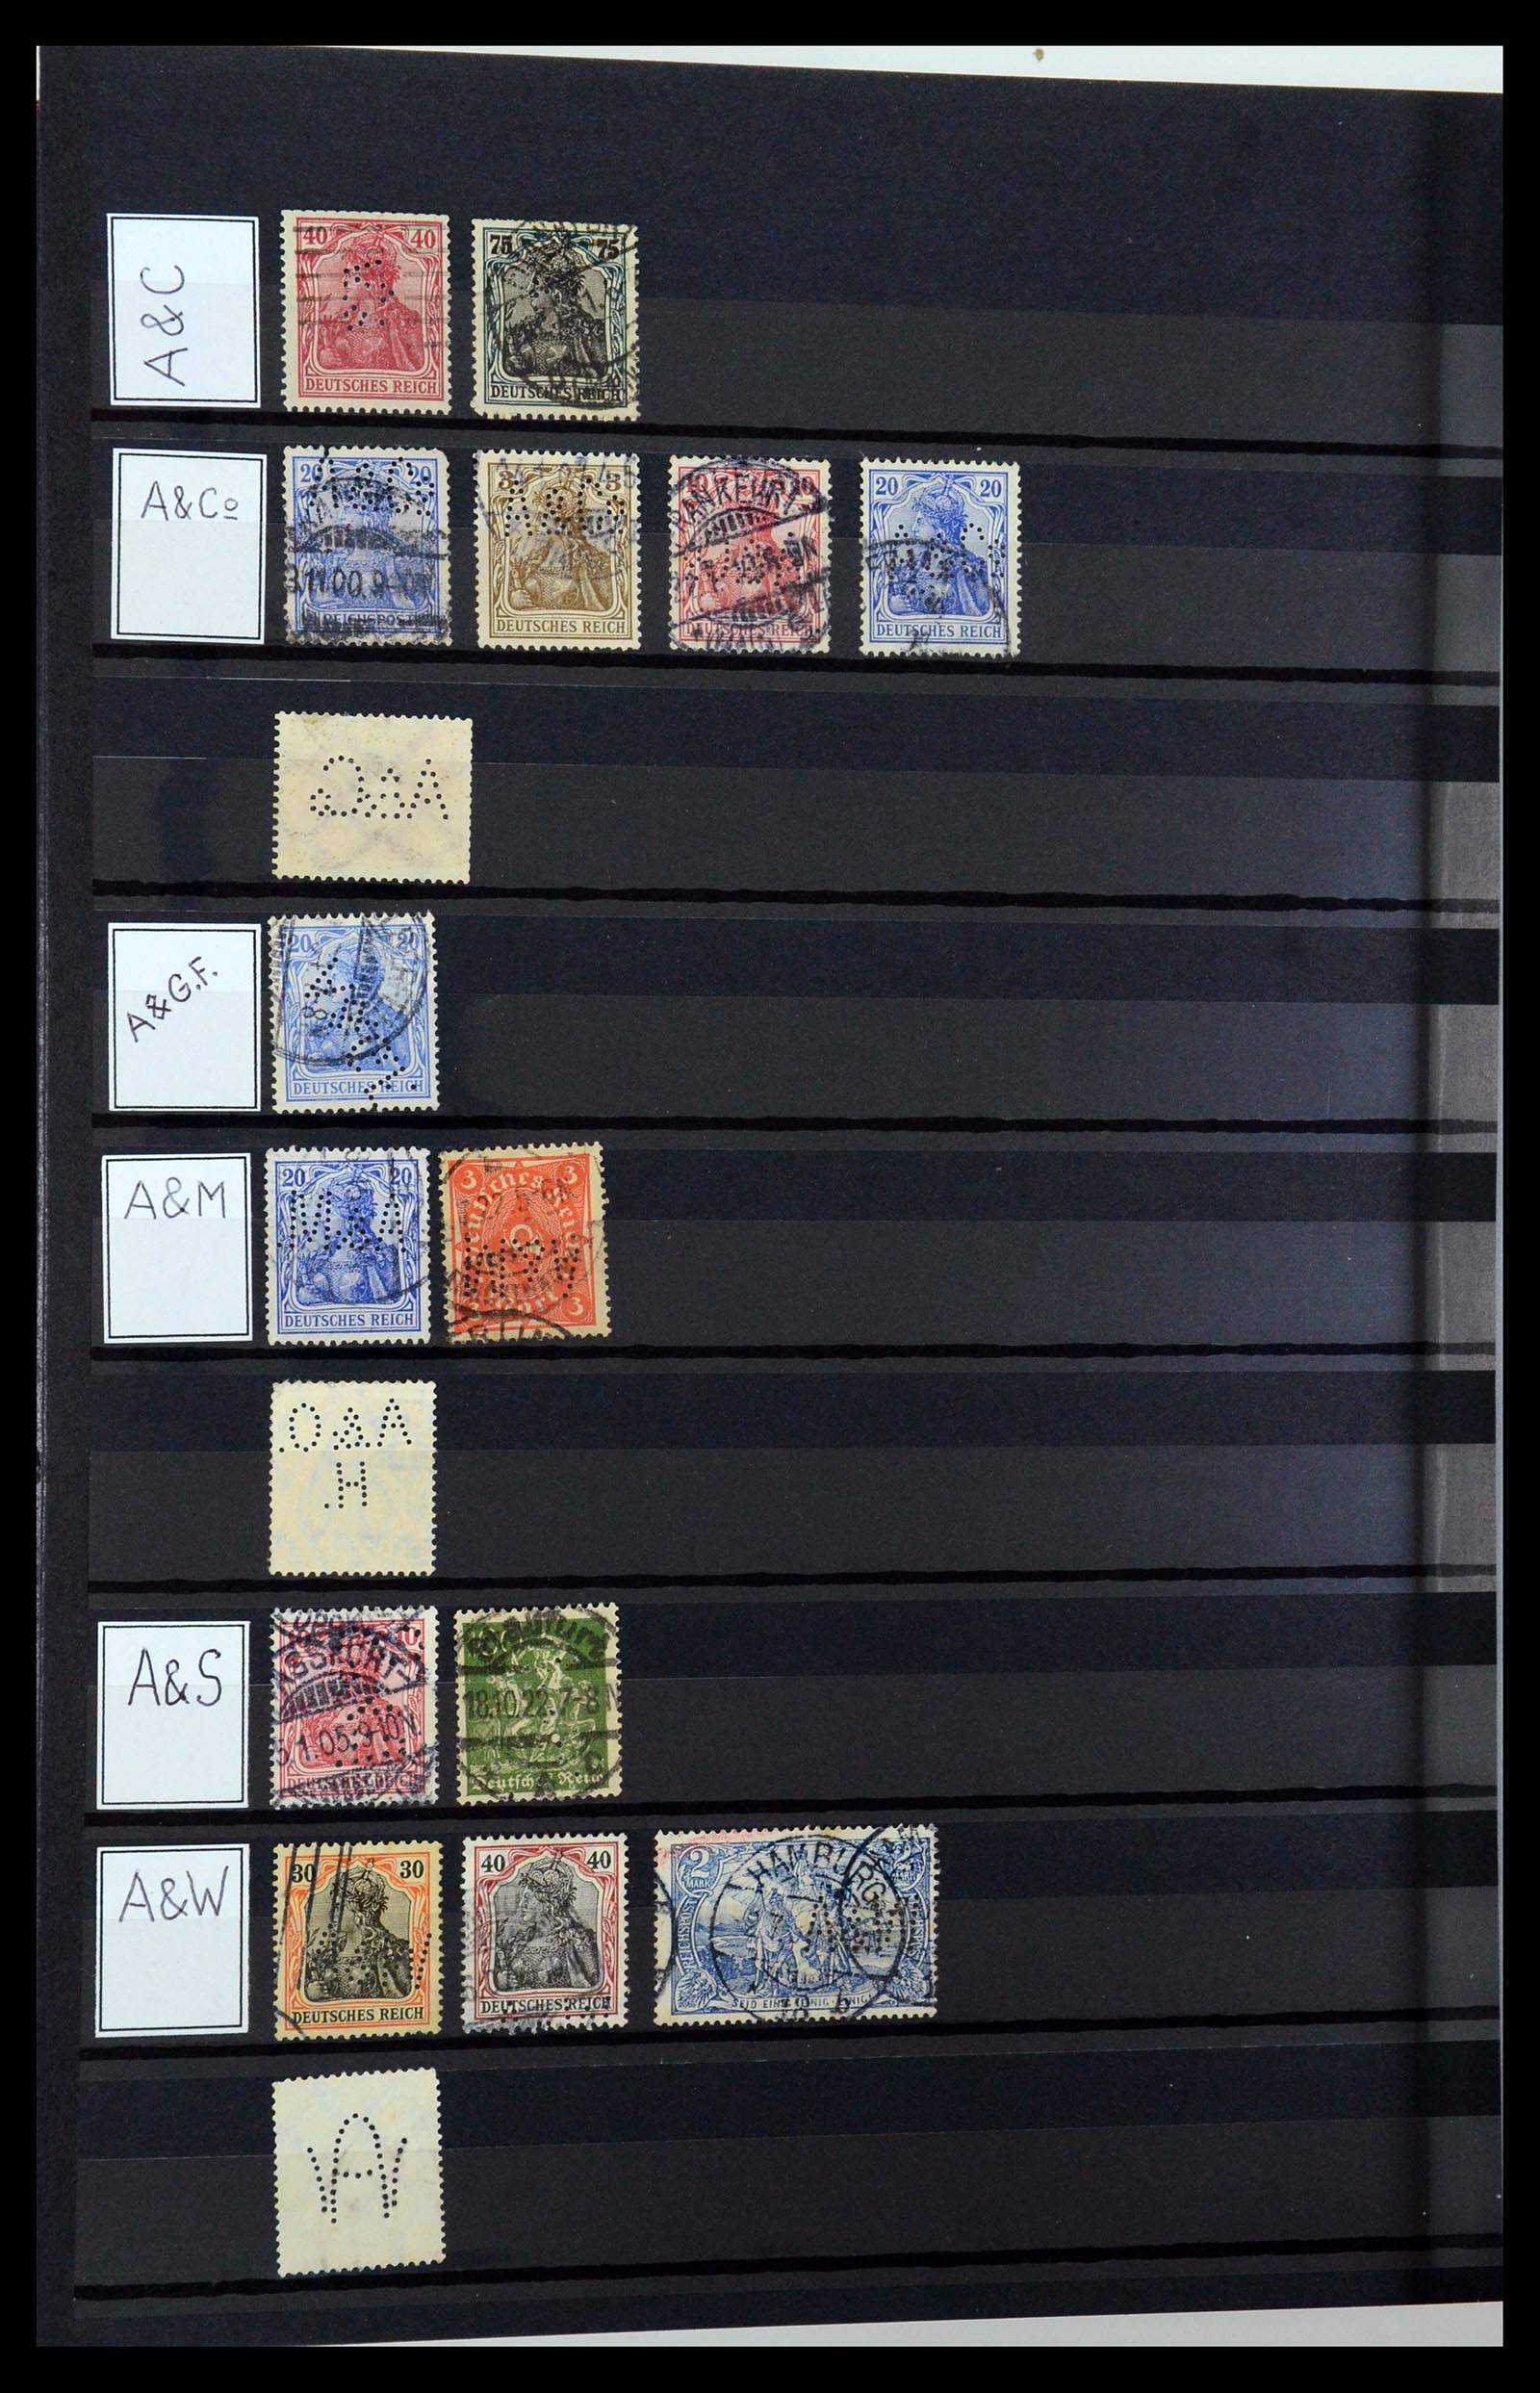 36405 032 - Stamp collection 36405 German Reich perfins 1880-1945.